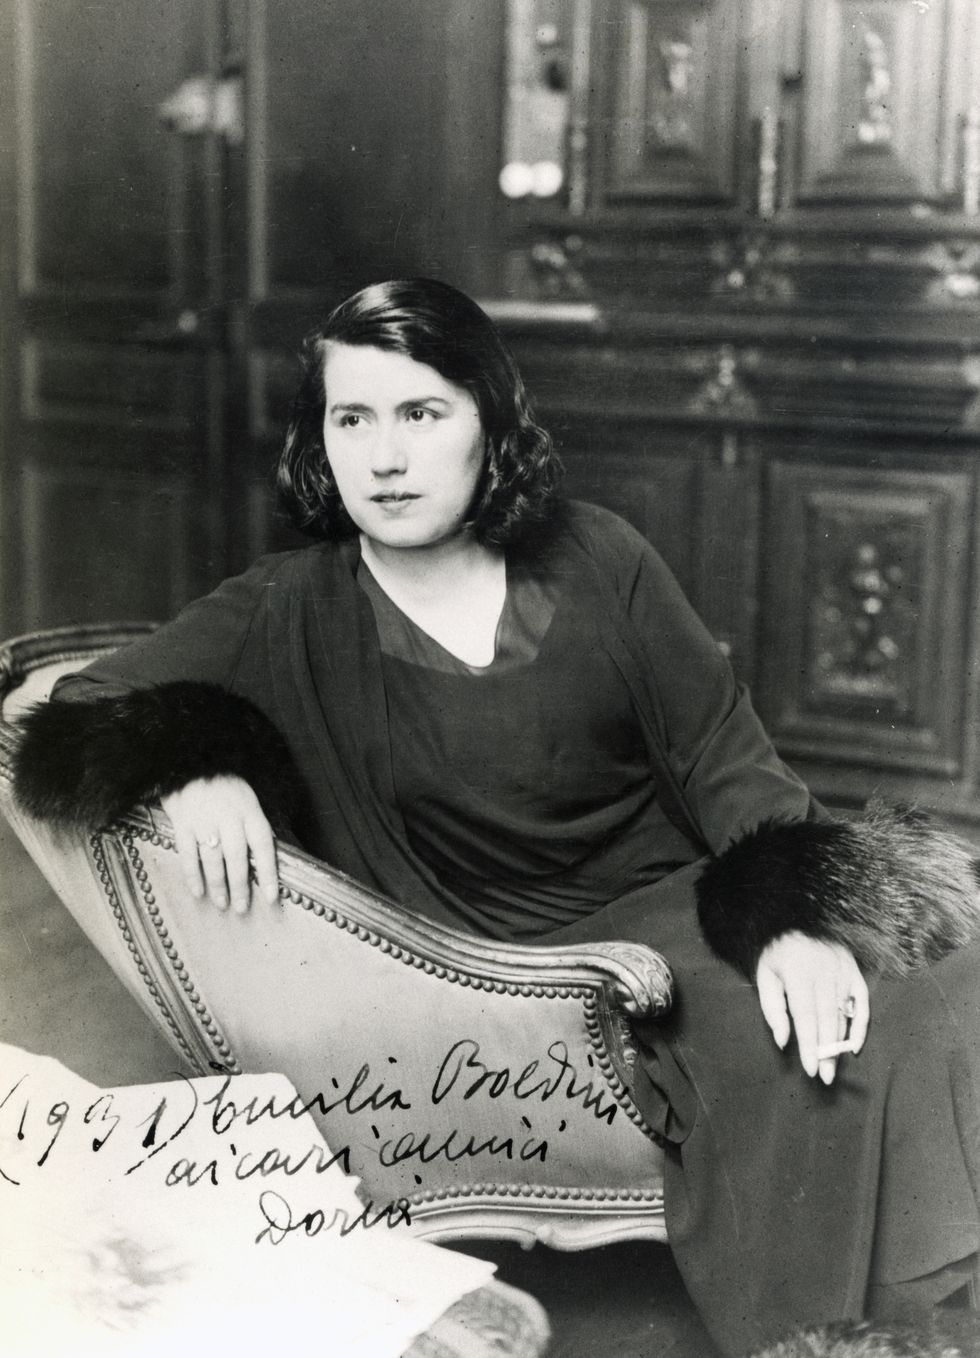 Emilia Cardona Boldini in Paris in 1931